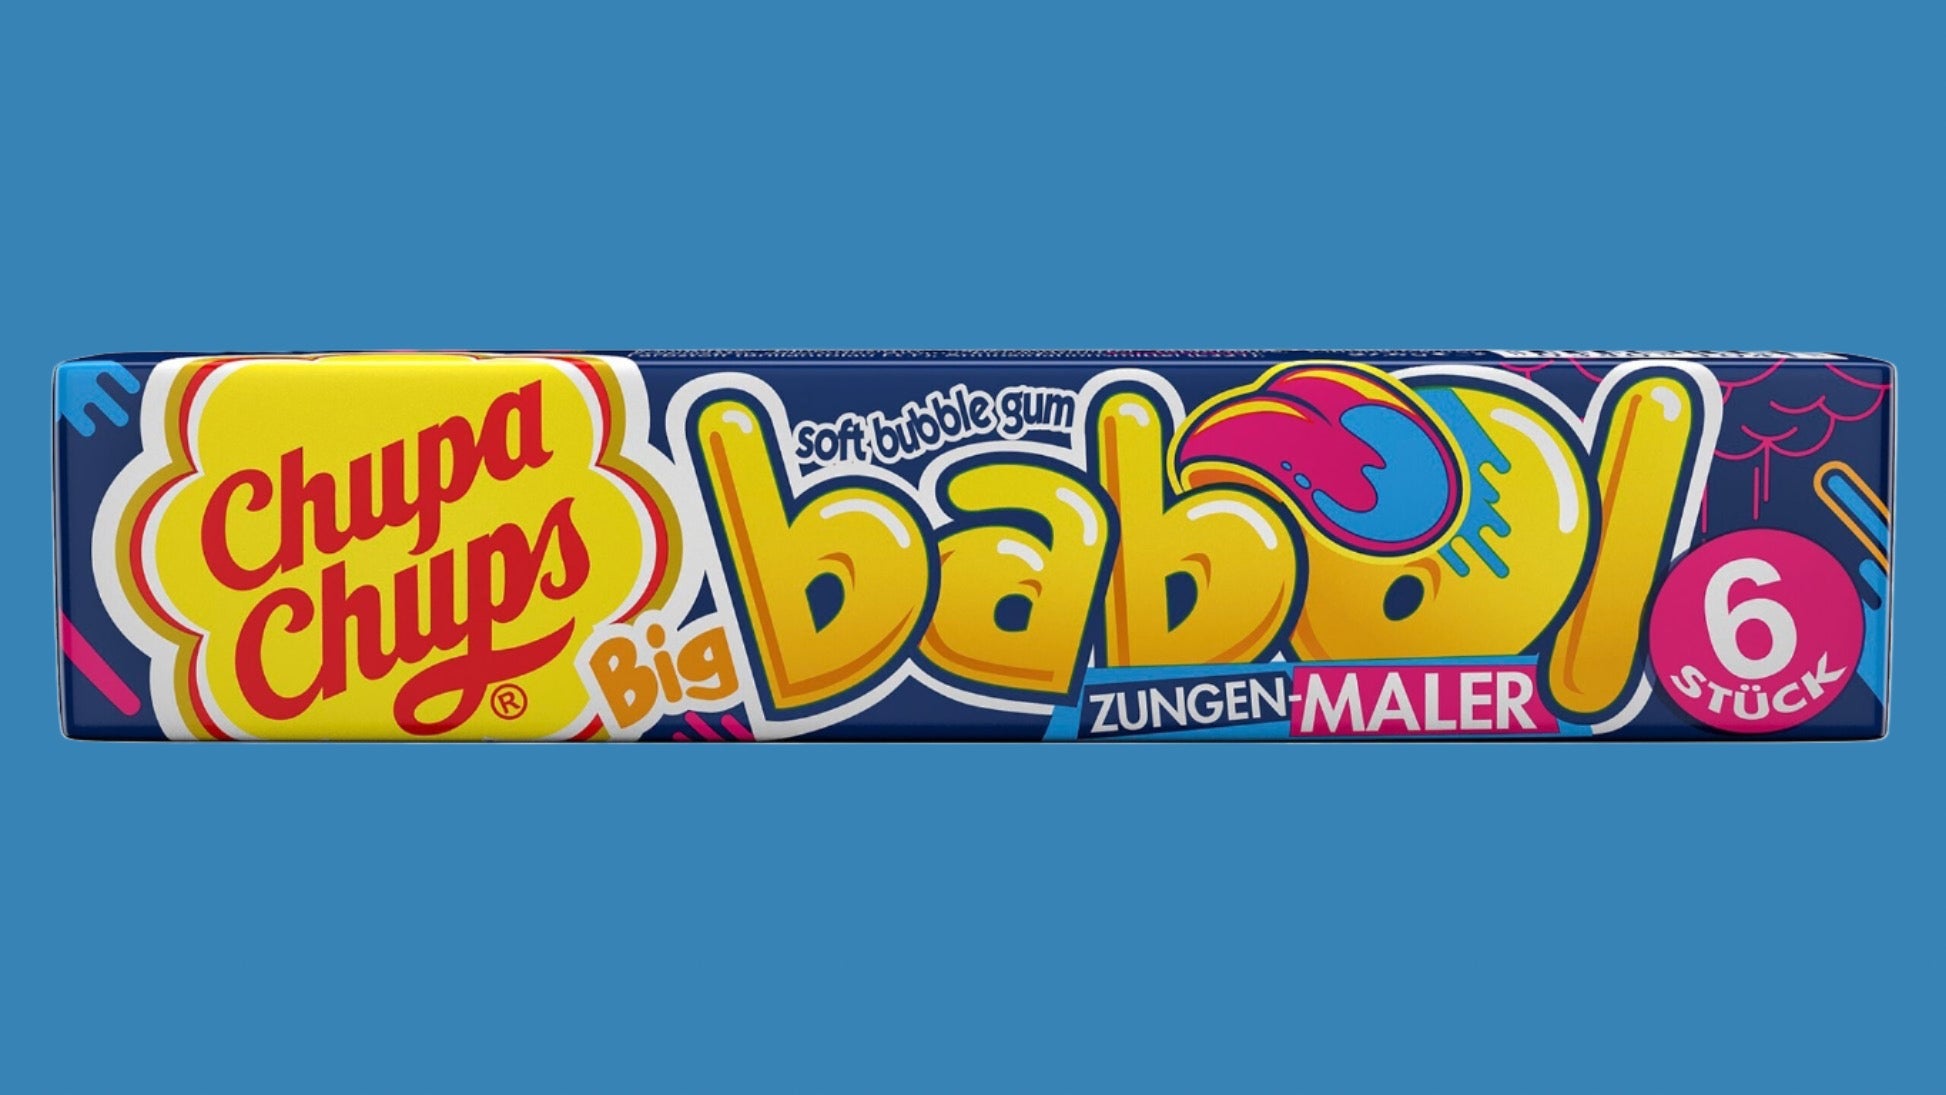 Chupa Chups Big Babol Zungenmaler Gum 27.6g (Netherlands)